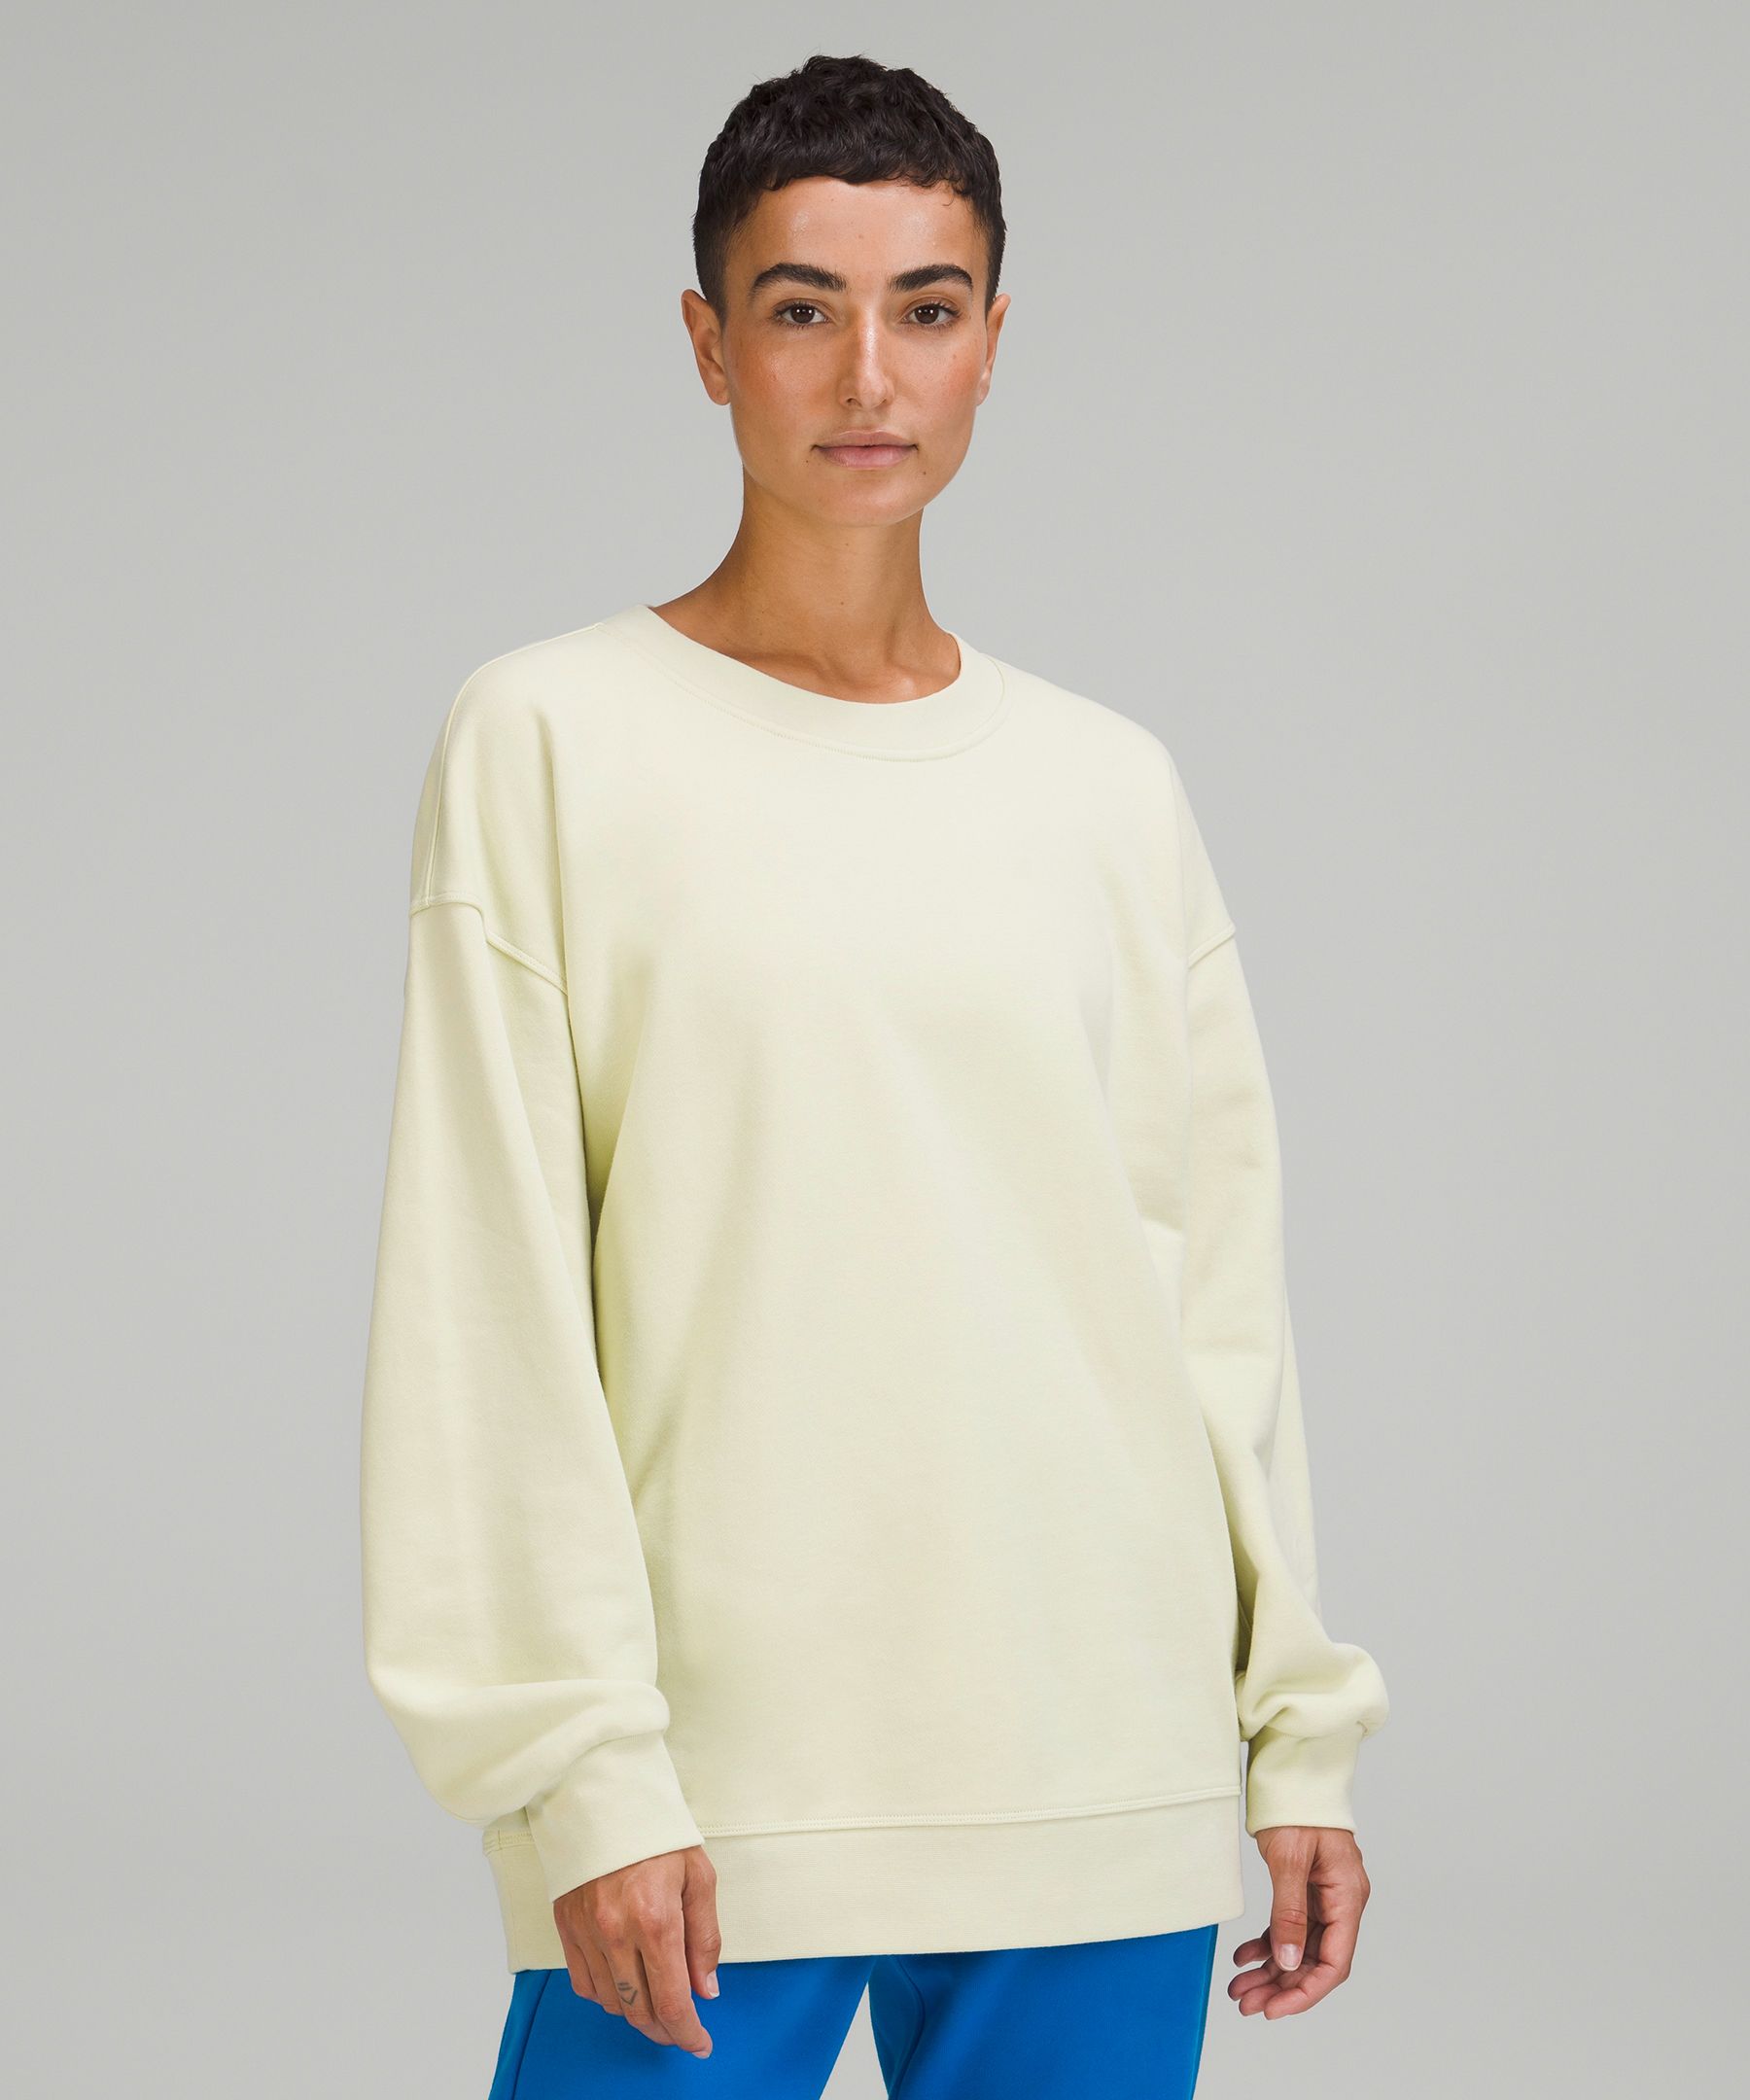 Lululemon Size 12 Perfectly Oversized Crew Sweatshirt Cream Off White Like  New